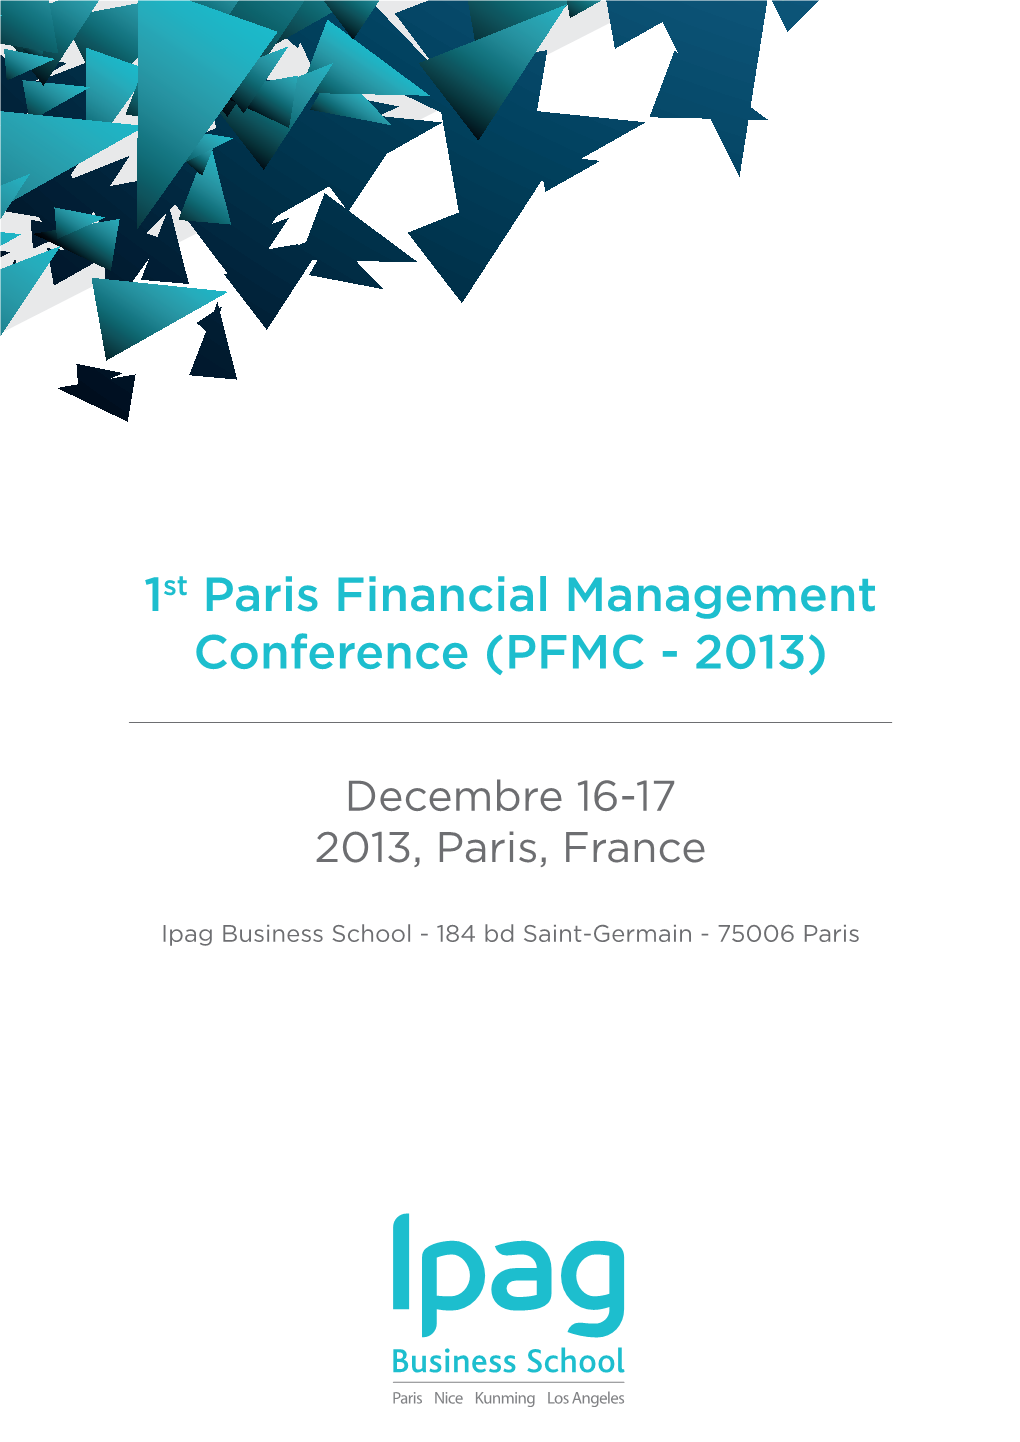 1St Paris Financial Management Conference (PFMC - 2013)